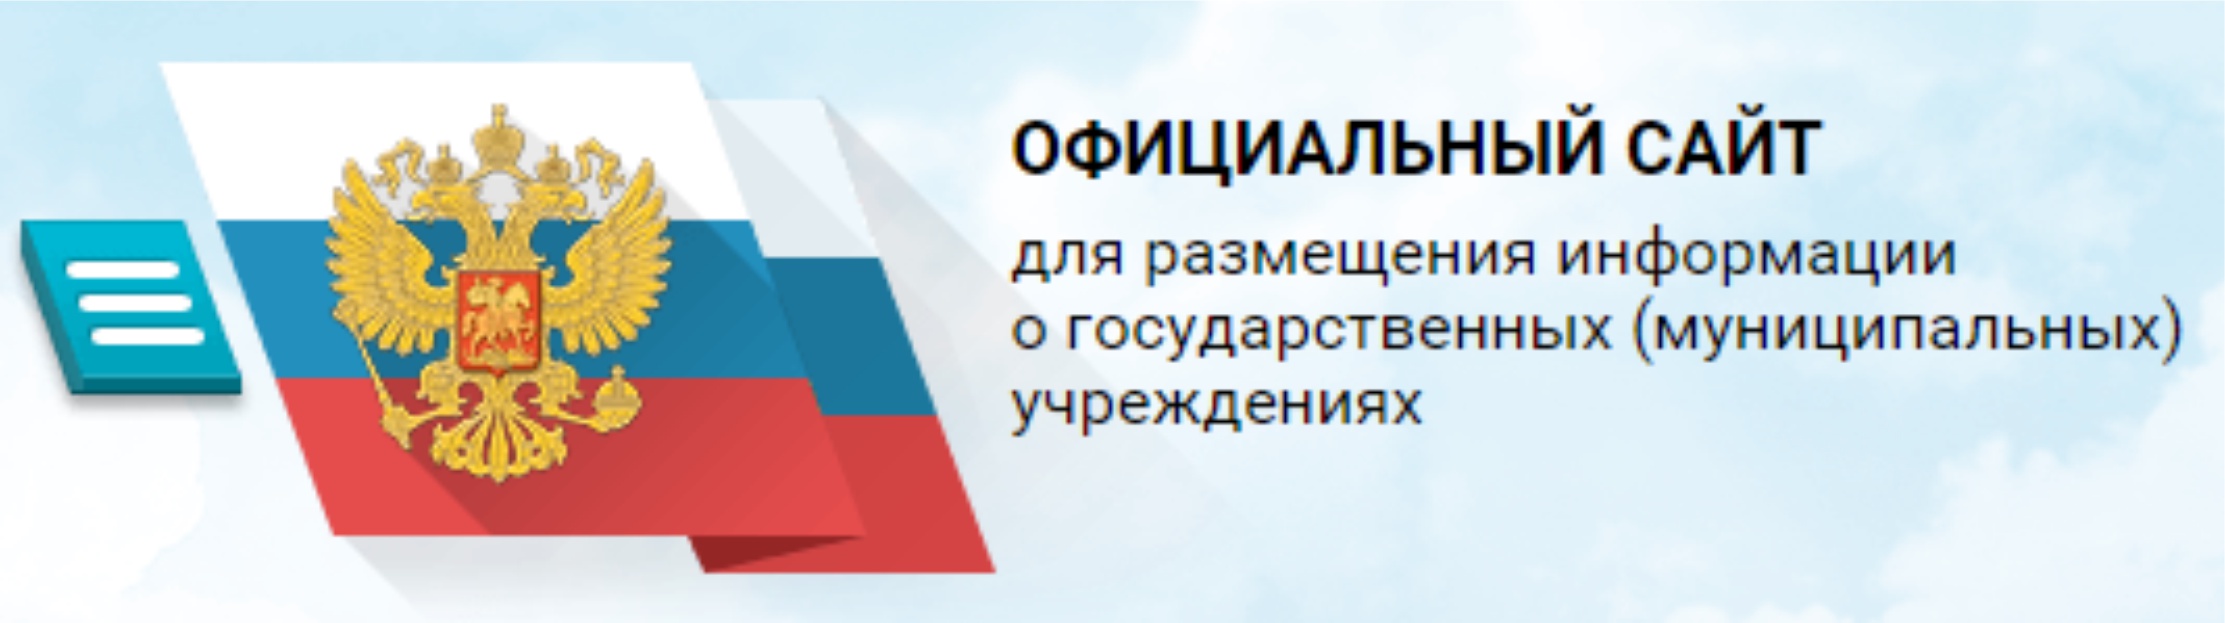 Картинки по запросу bus.gov.ru